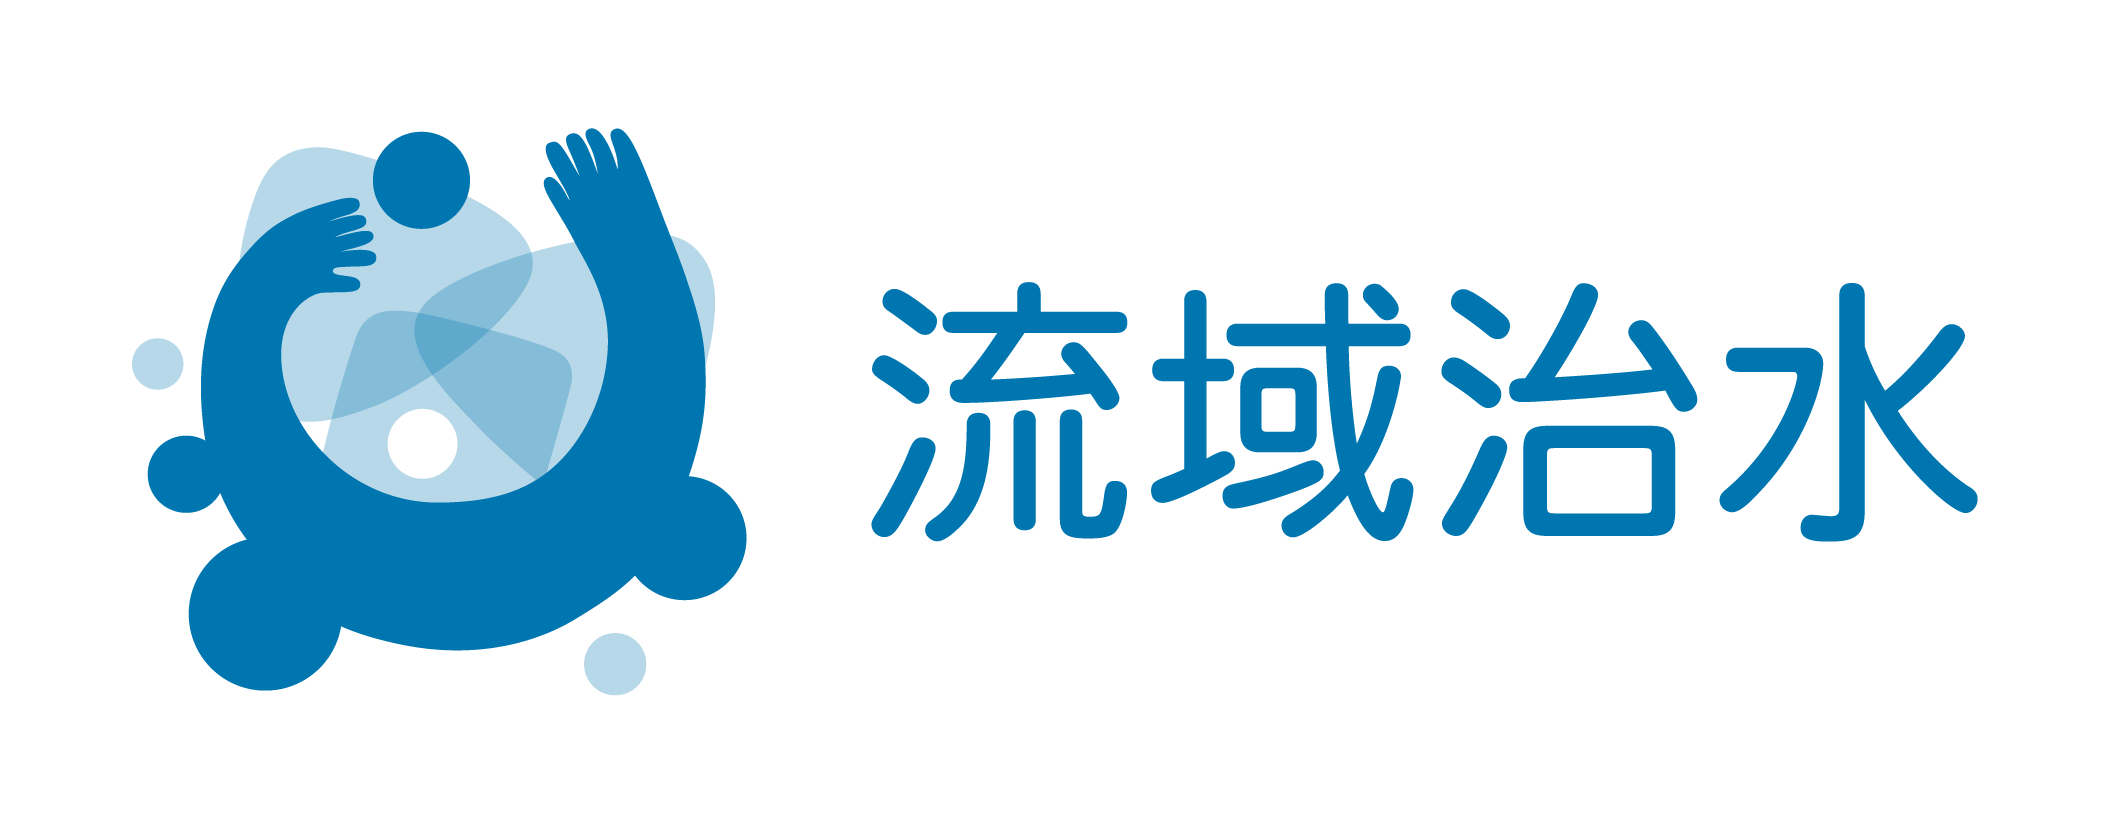 ryuikichisui_logo_12.png